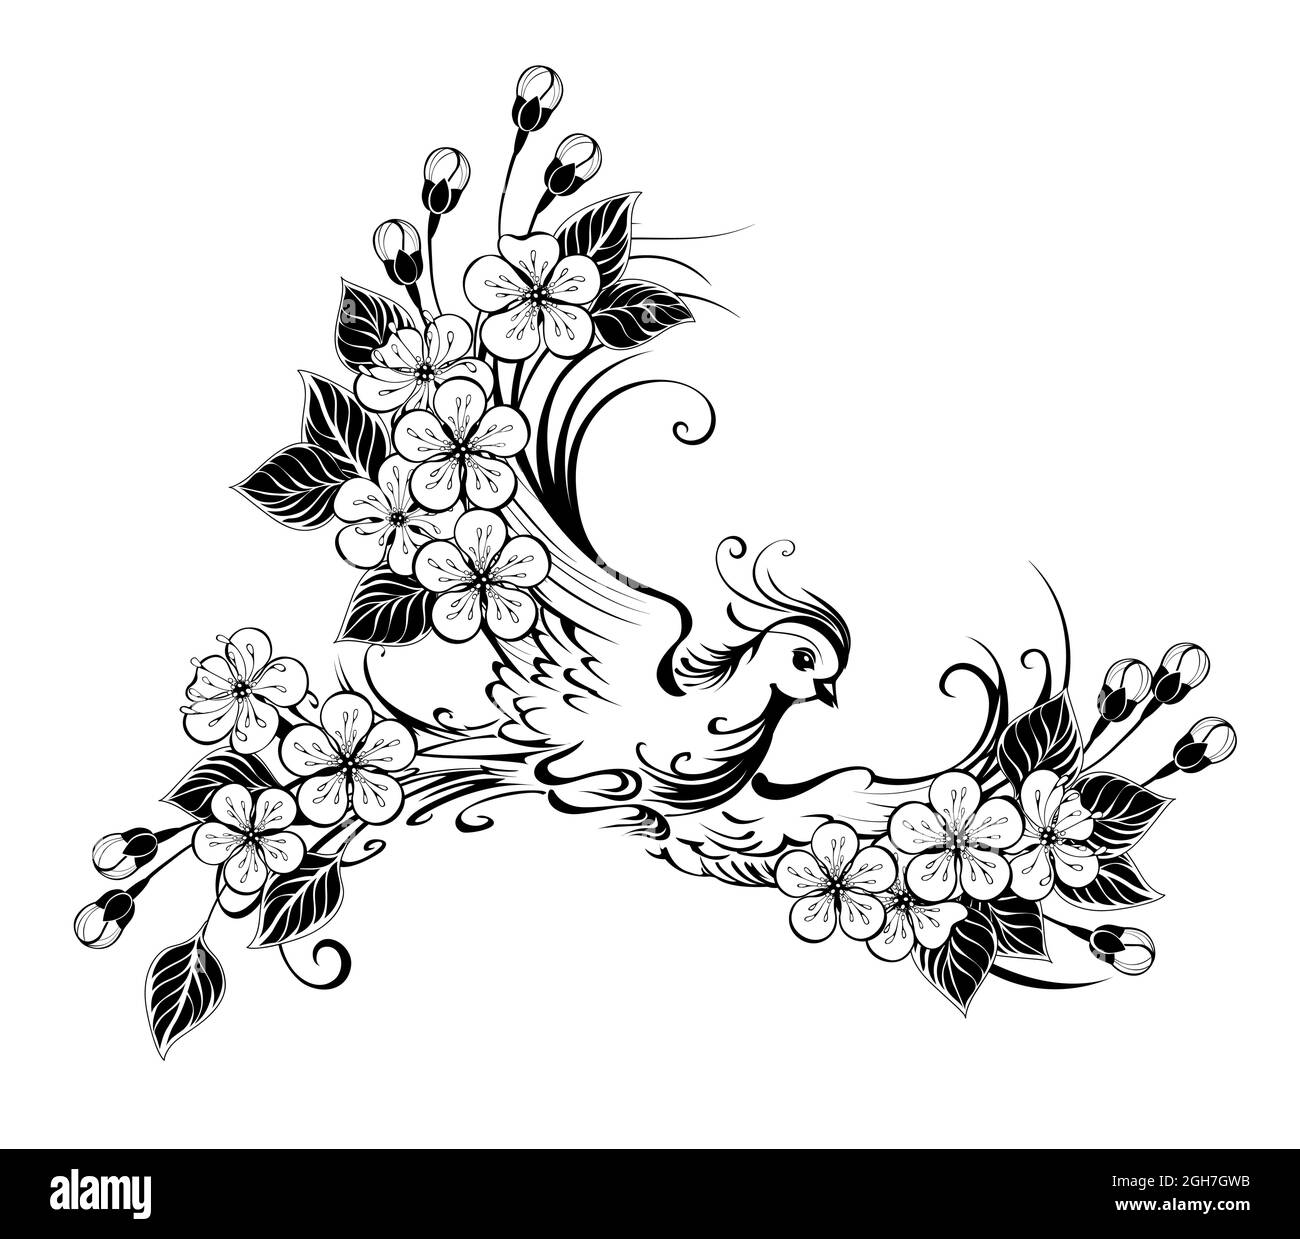 Disegnato artisticamente, contorno, uccello volante con ali decorate con fiori su sfondo bianco. Illustrazione Vettoriale